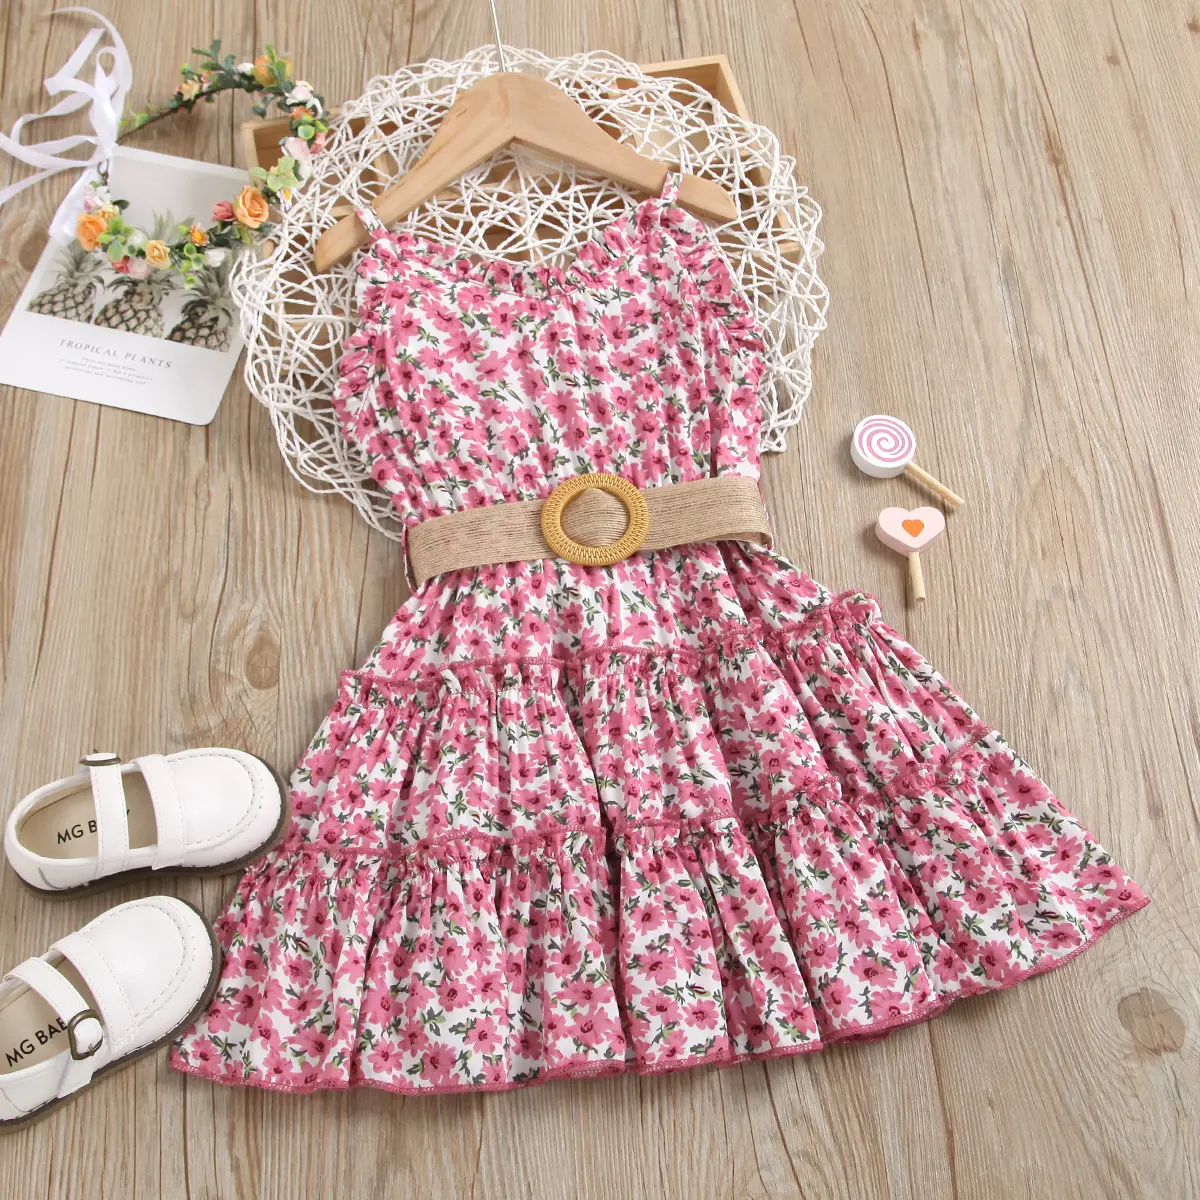 Floral Flower Girl Dress For Summer Dress With Belt Children Flying Short Sleeve Casual Girl Dress